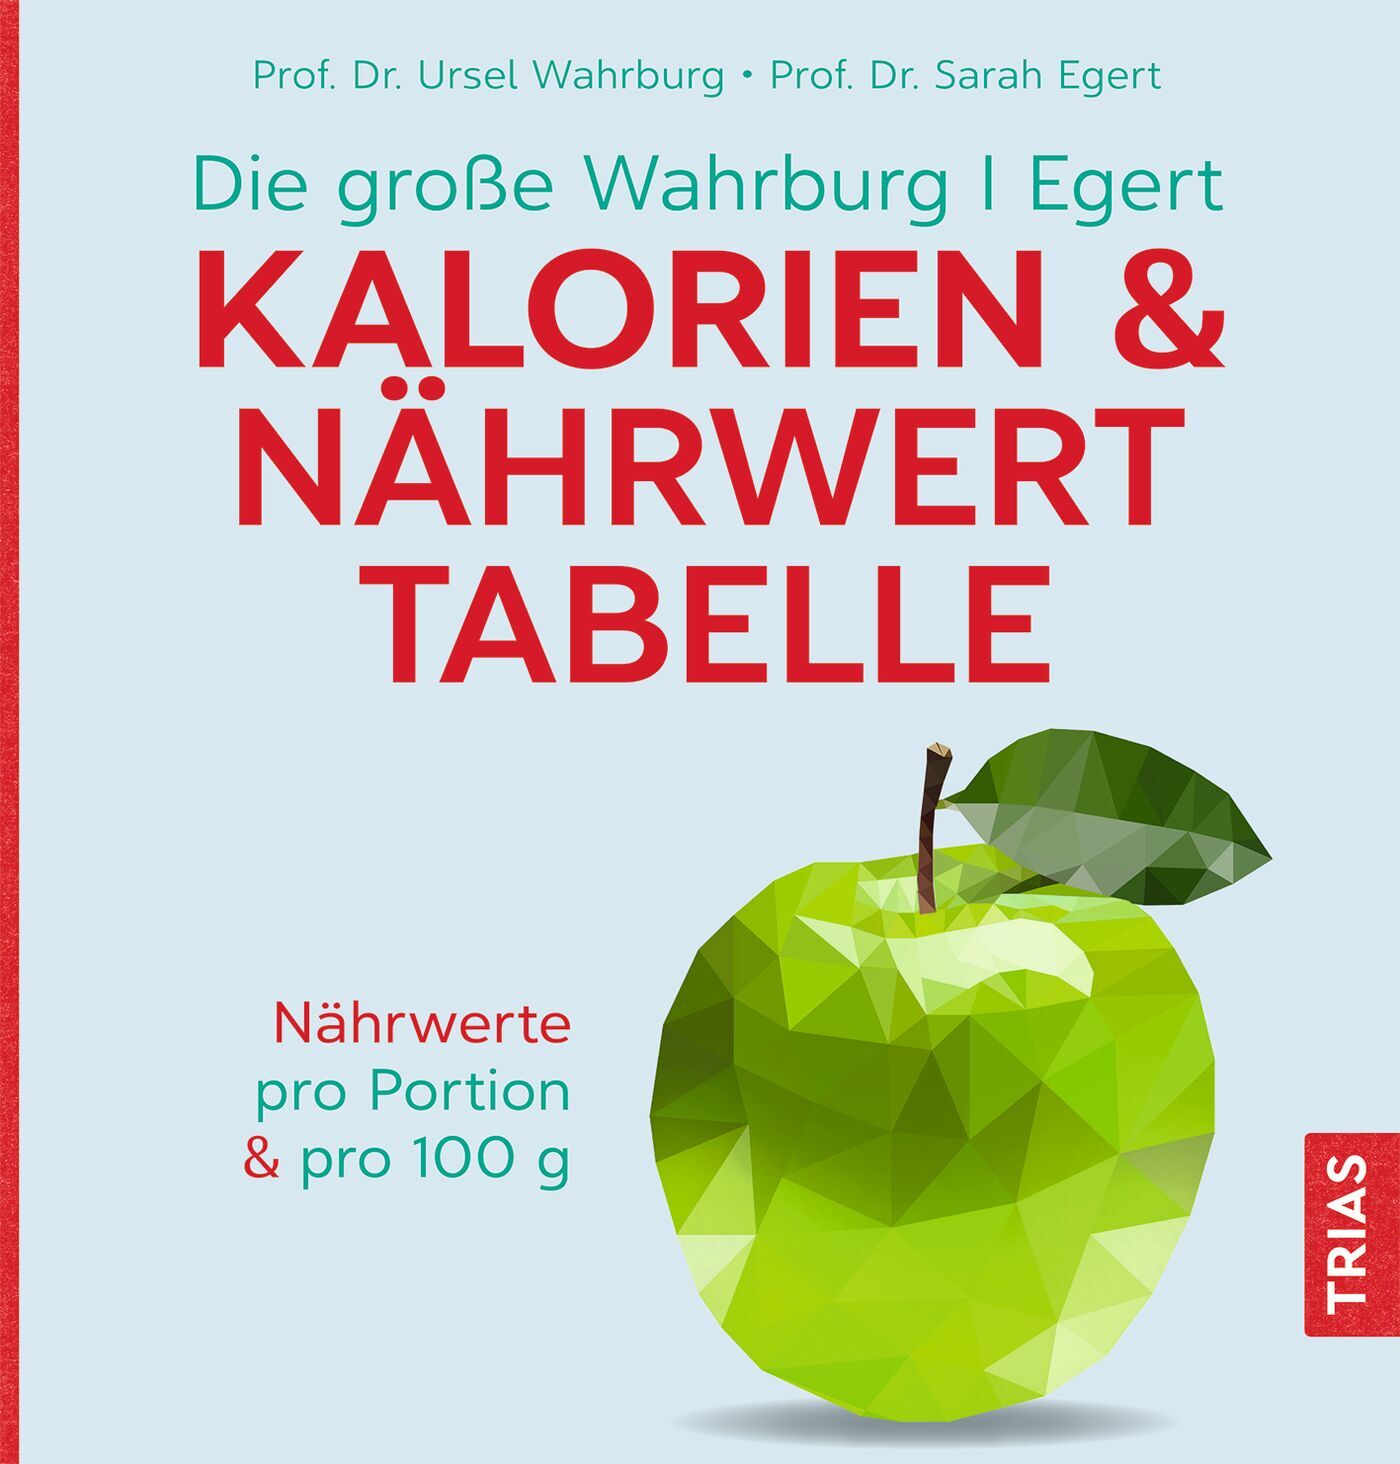 Die große Wahrburg/Egert Kalorien-&-Nährwerttabelle, 9783432117201